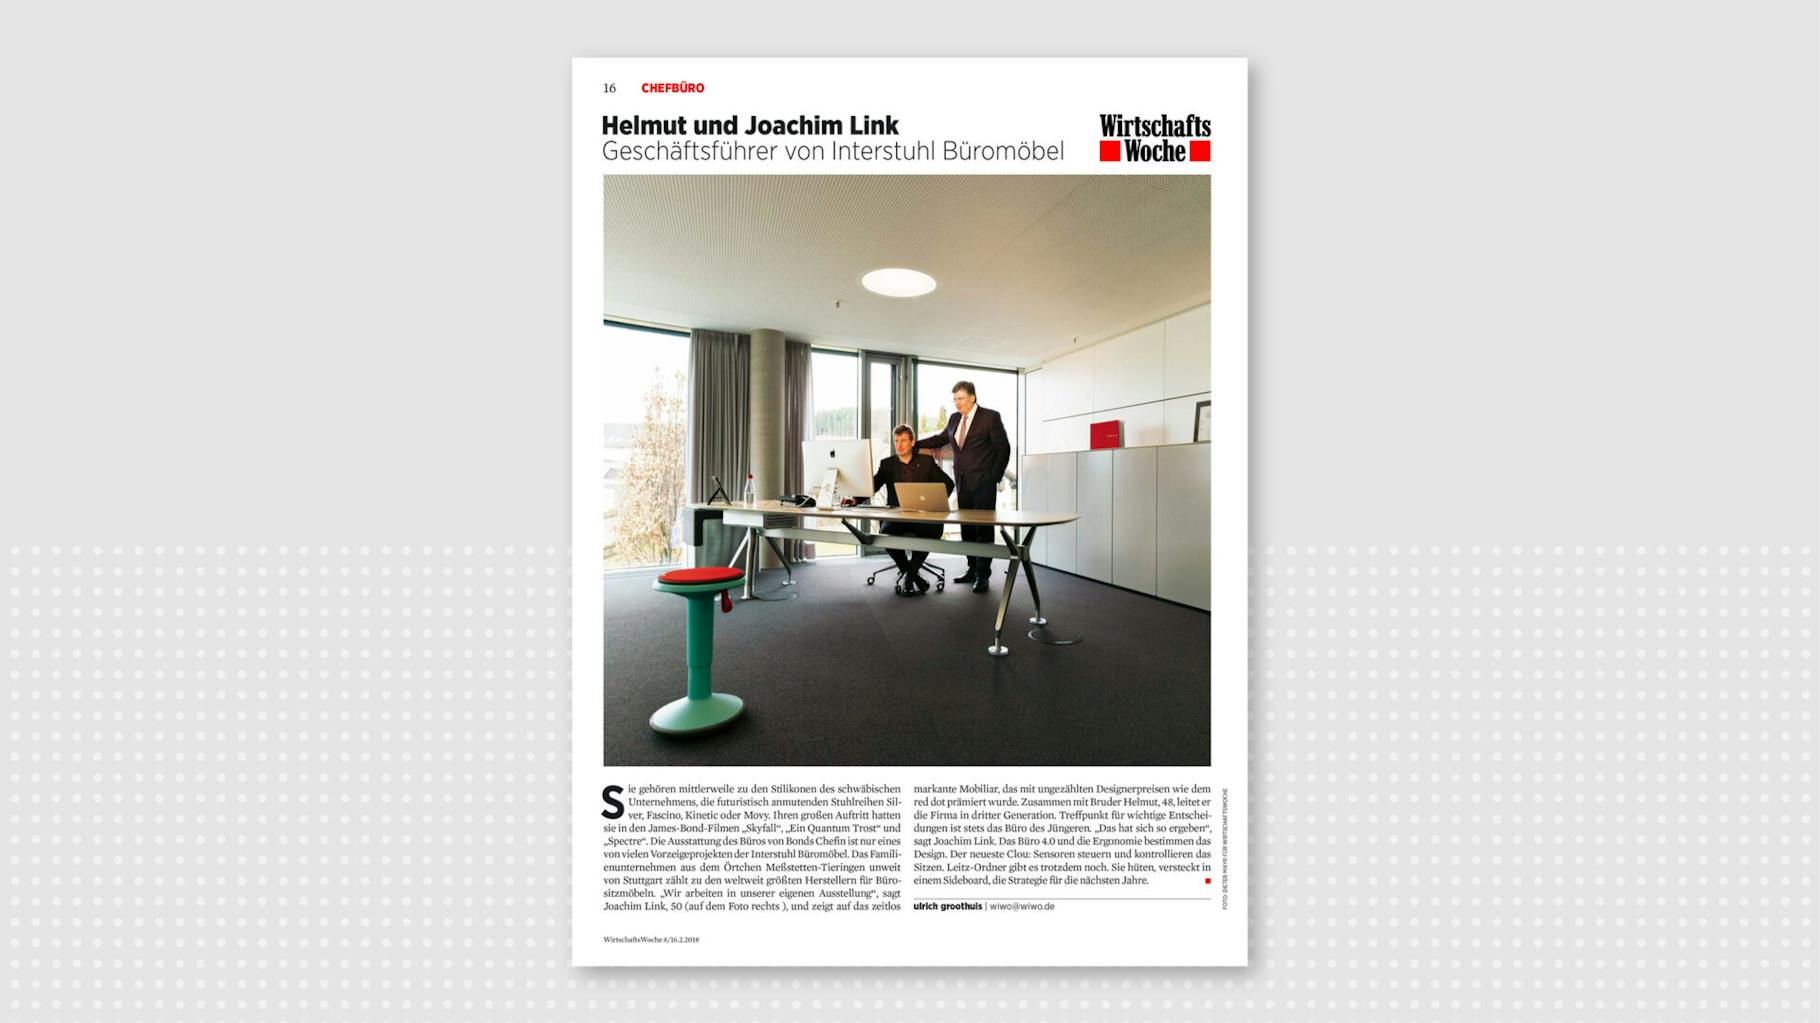 Magazine article in the Wirtschaftswoche